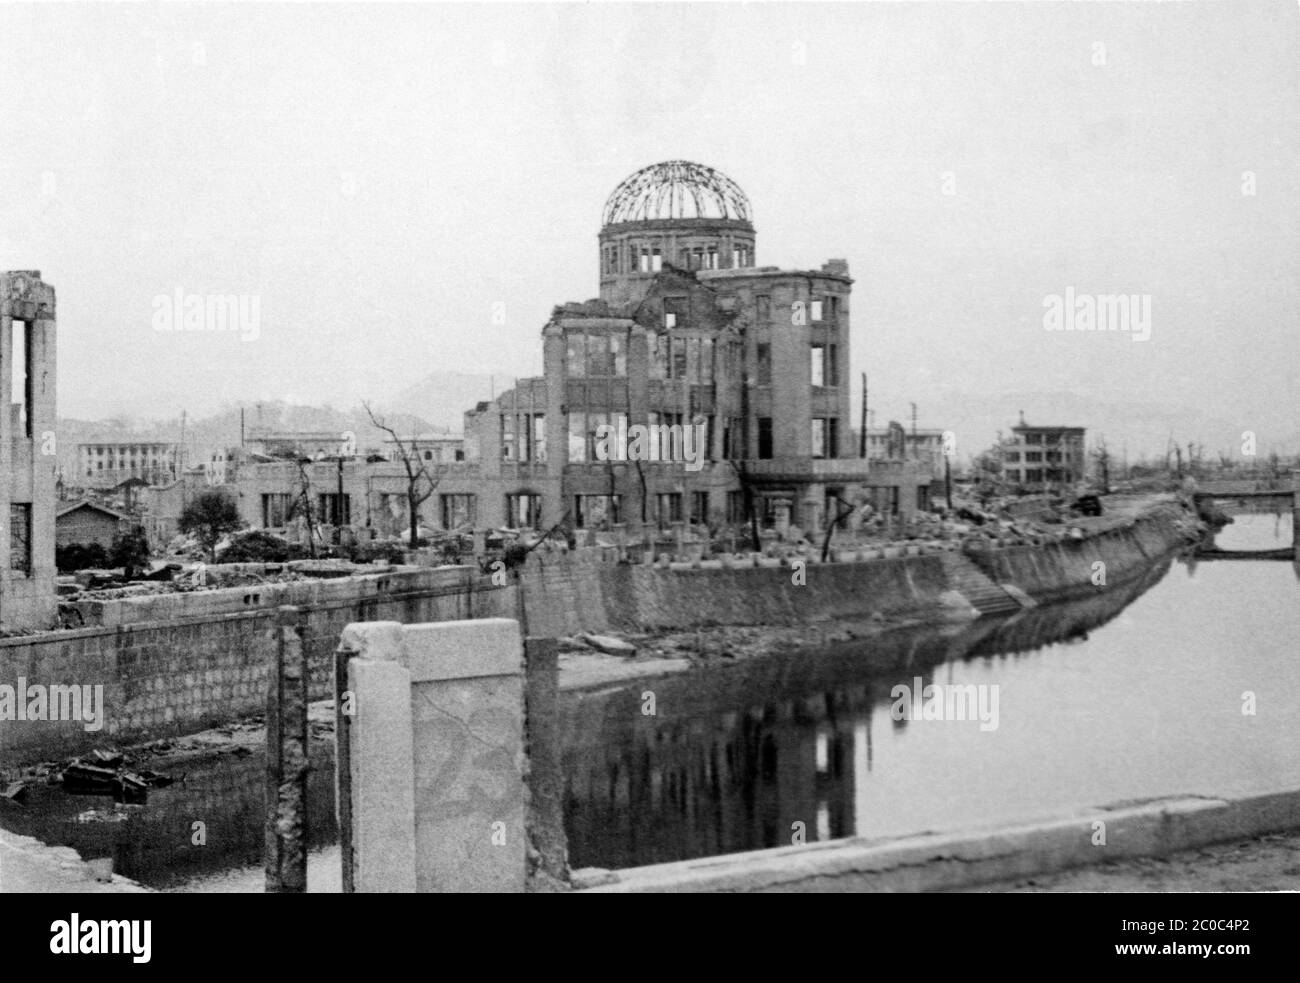 [ 1945 Japan - Atombombenabwurf auf Hiroshima ] - Archivfoto der US-Militärs von den Nachwirkungen der Atombombenabwürfe auf Hiroshima, ca. 1945 (Showa 20). Dieses Gebäude ist heute als Atombombendom bekannt. Die Atomexplosion vom 6. August 1945 (Showa 20), die Hiroshima verwüstete, fand fast direkt über dem Gebäude Platz. Heute ist es ein wichtiges Friedensdenkmal in Hiroshima und wurde im Dezember 1996 auf die UNESCO-Welterbeliste aufgenommen (Heisei 8). Warnung: Klar, aber etwas unscharf. Silberdruck mit Vintage-Gelatine aus dem 20. Jahrhundert. Stockfoto